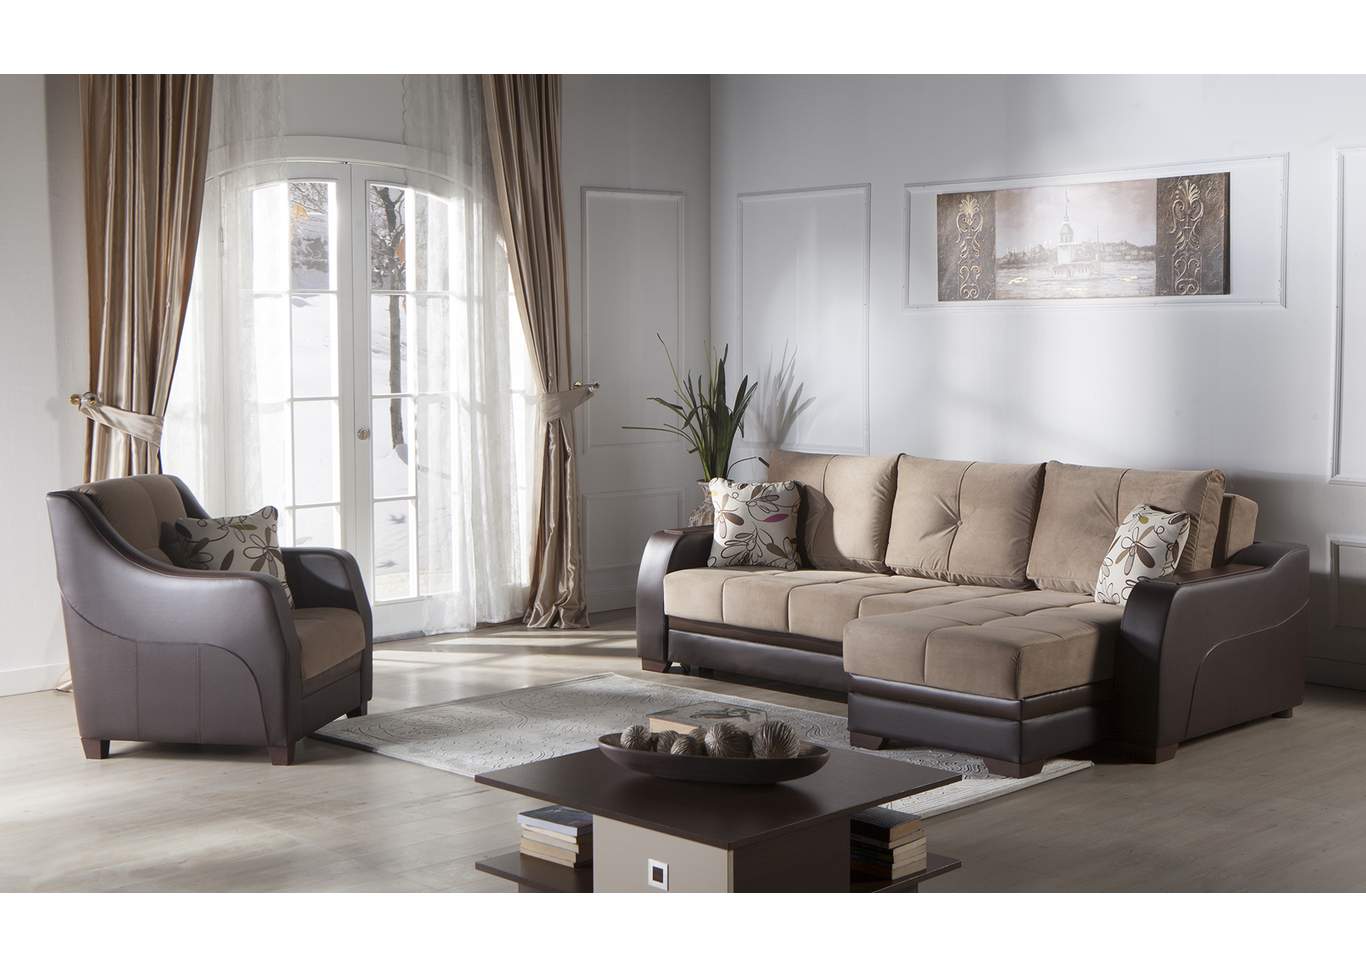 Ultra Lilyum Vizon Sectional,Hudson Furniture & Bedding